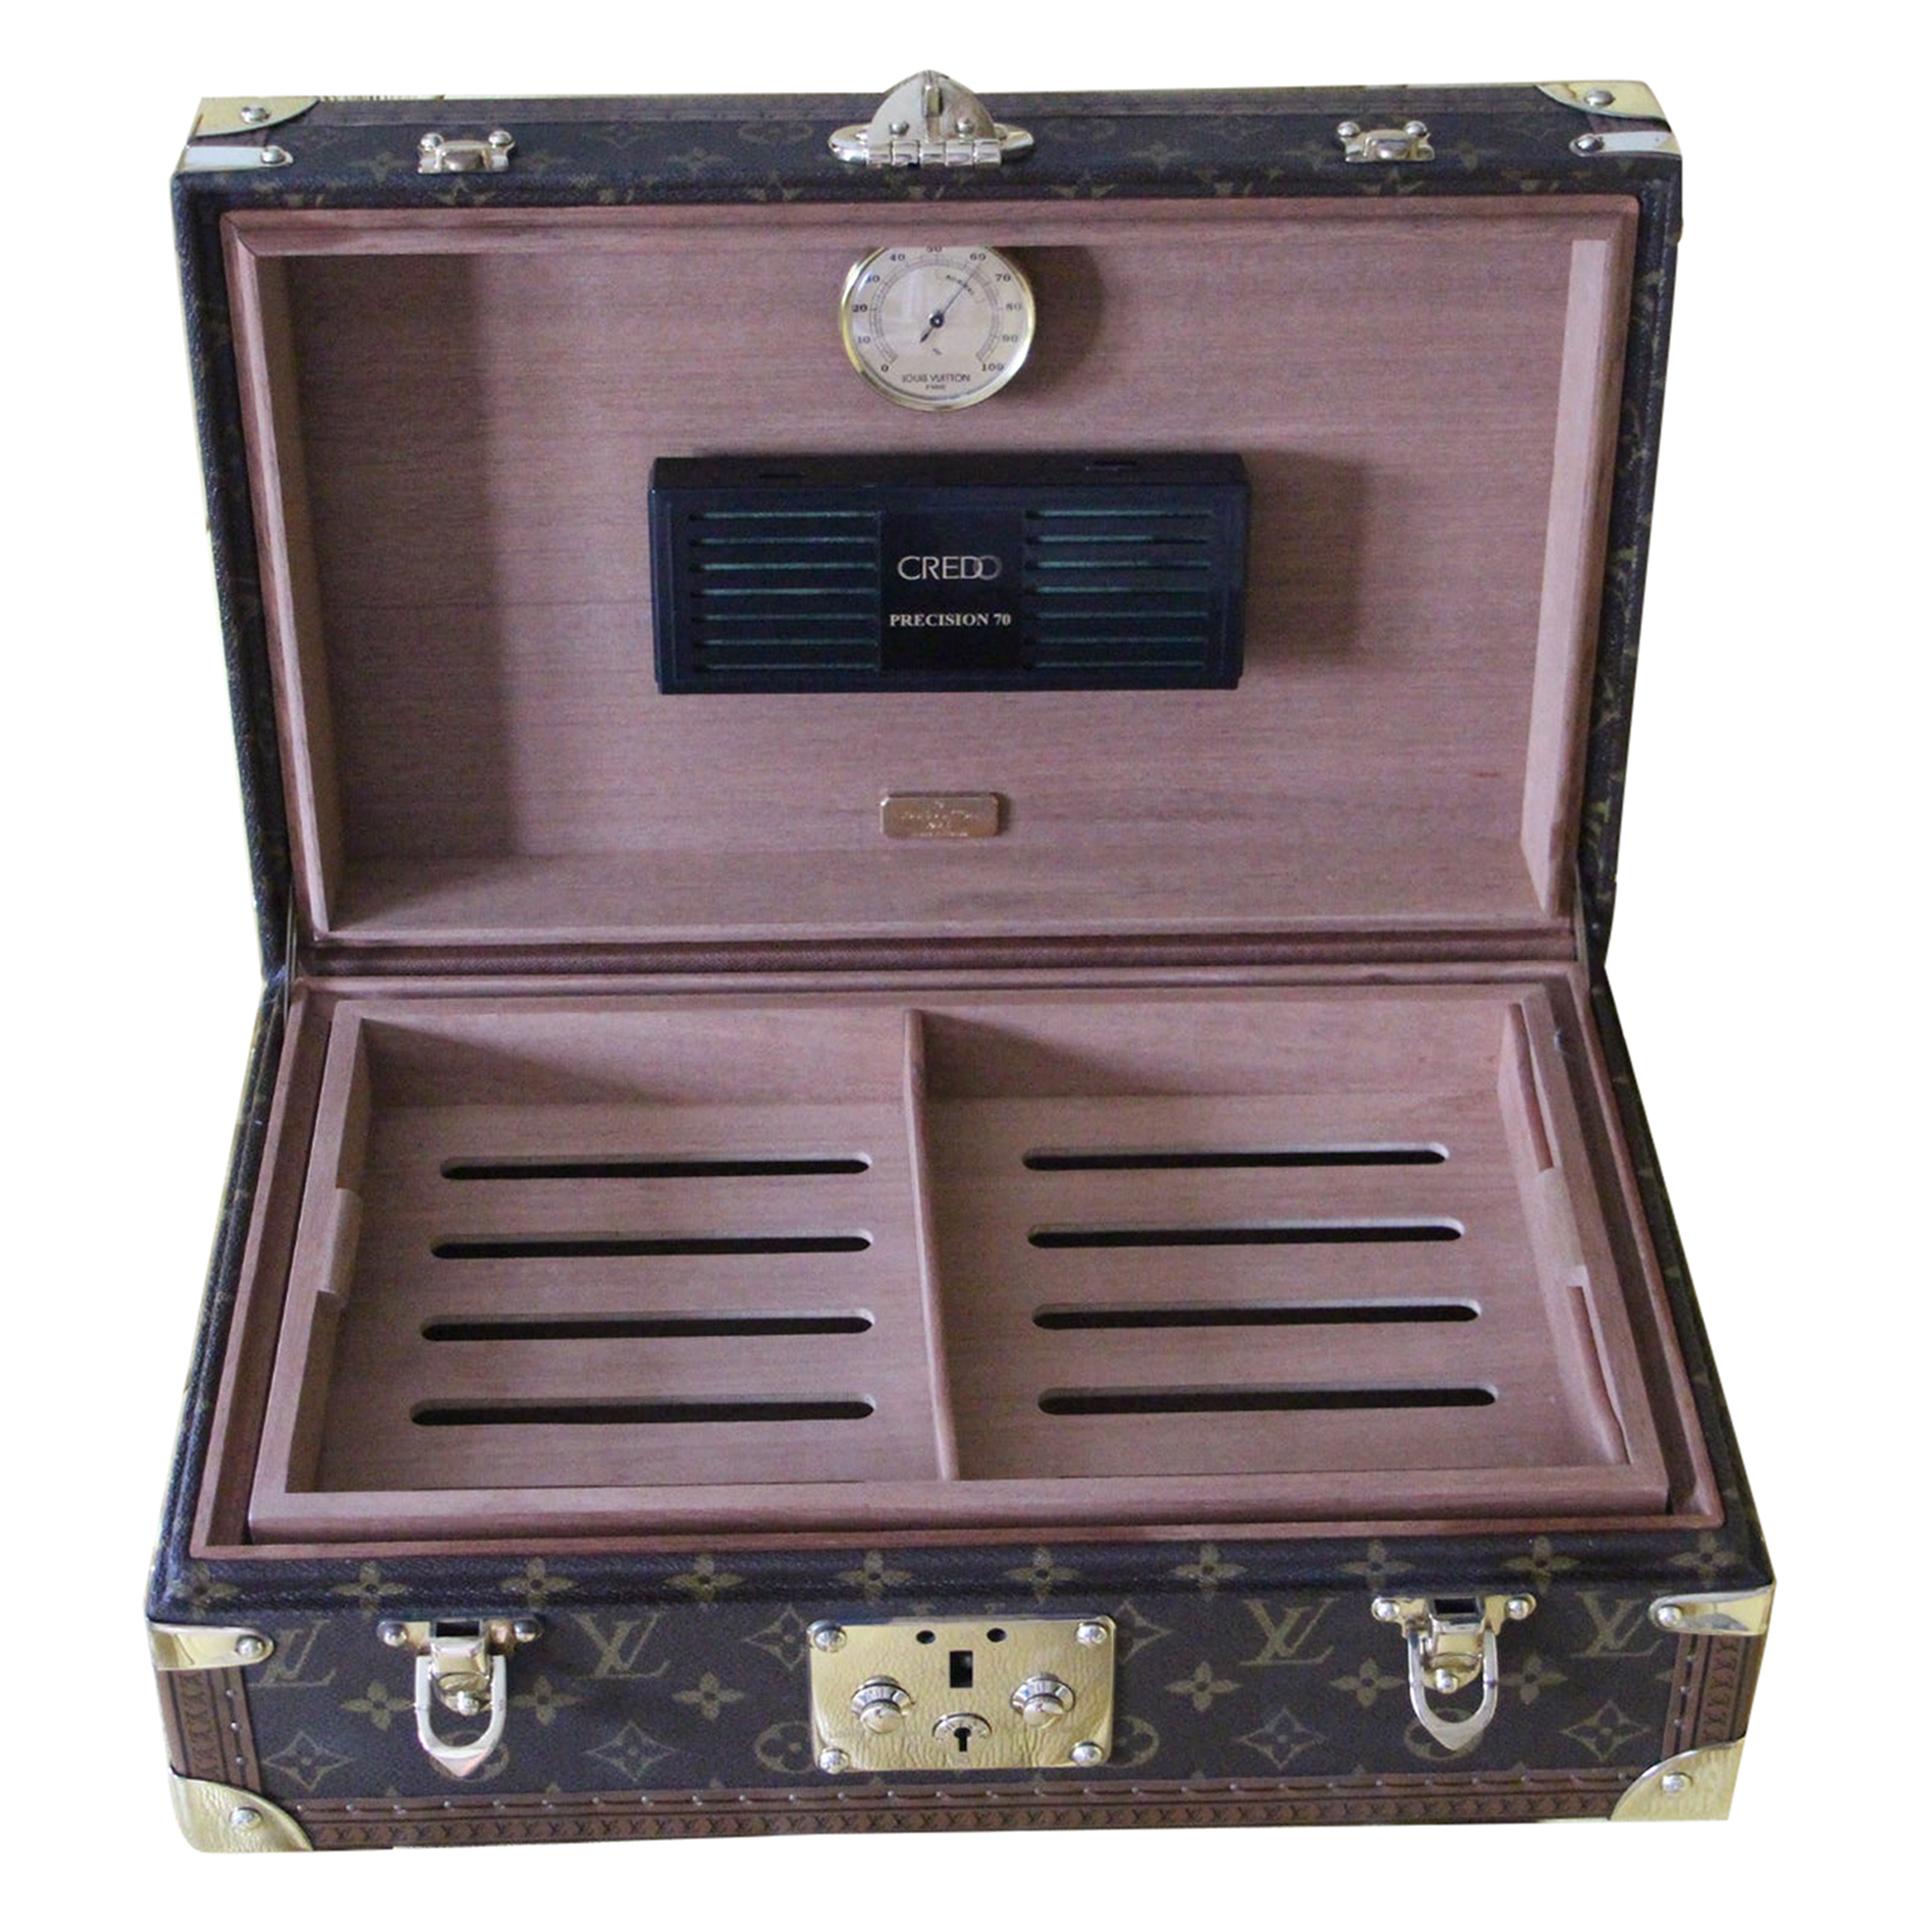 Louis Vuitton Cigars Humidor, Louis Vuitton Cigars Box, Vuitton Cigars Case